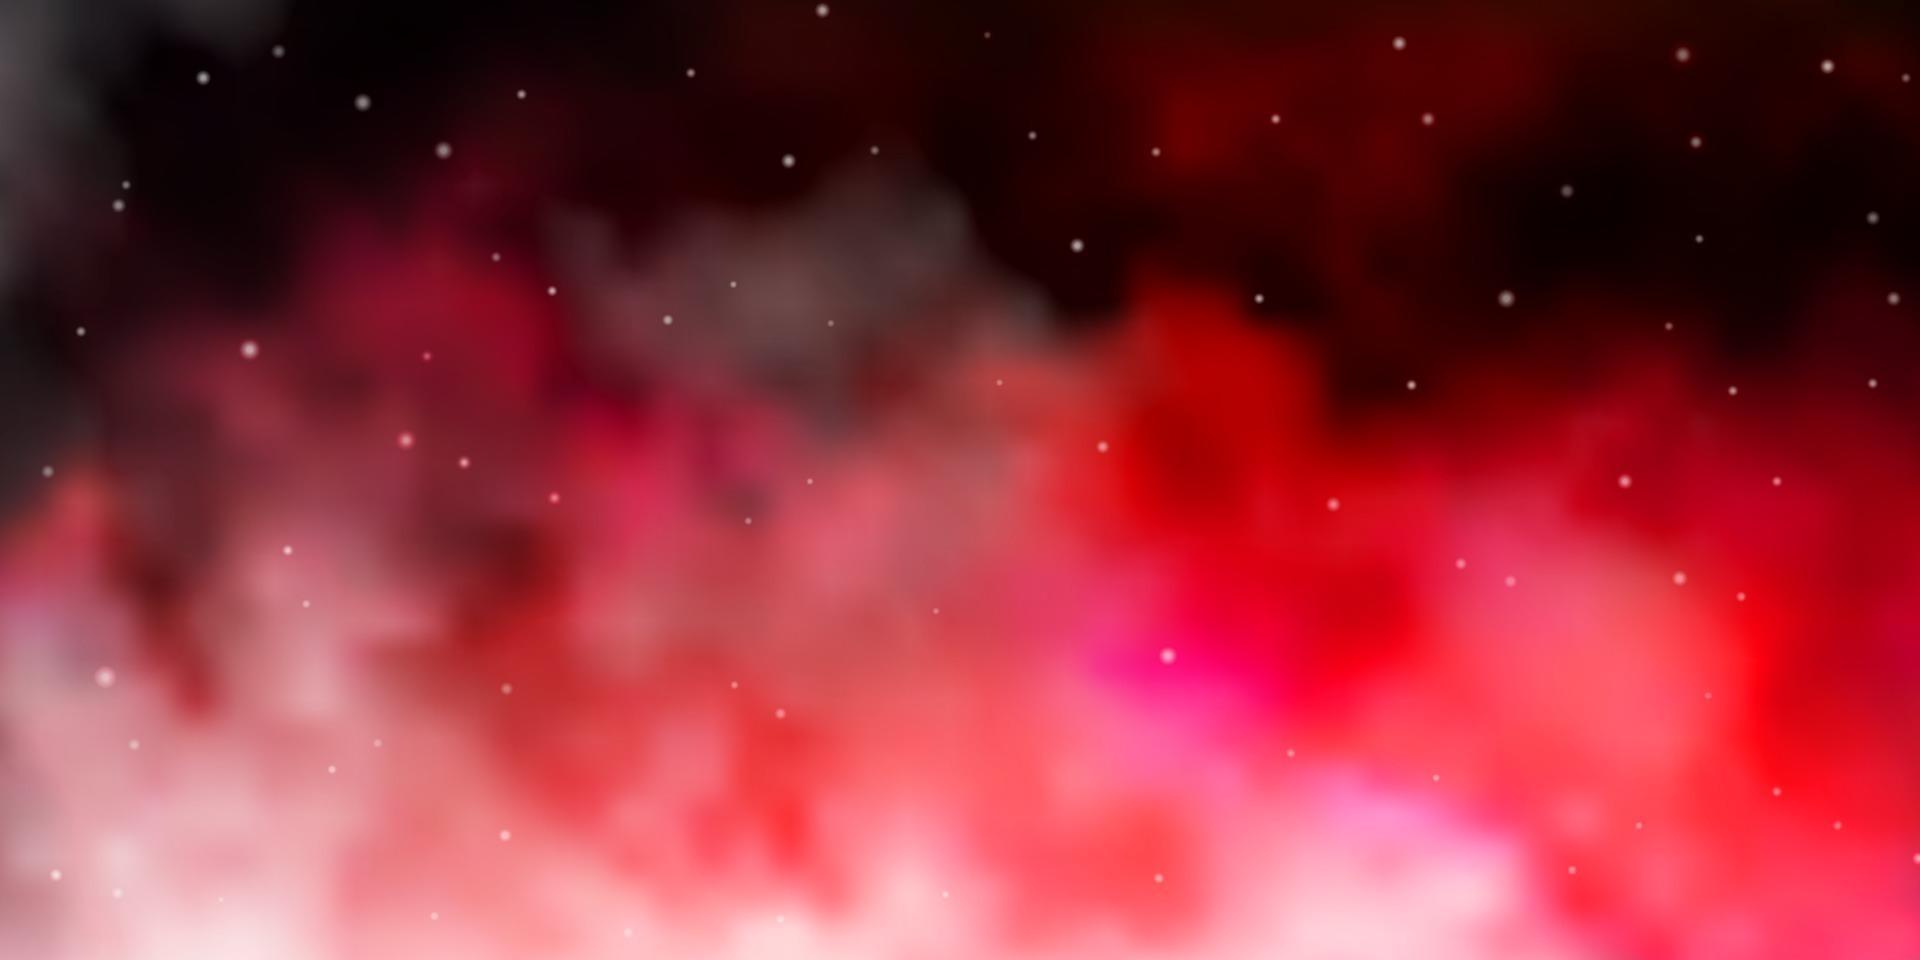 sfondo vettoriale rosa chiaro, rosso con stelle colorate.